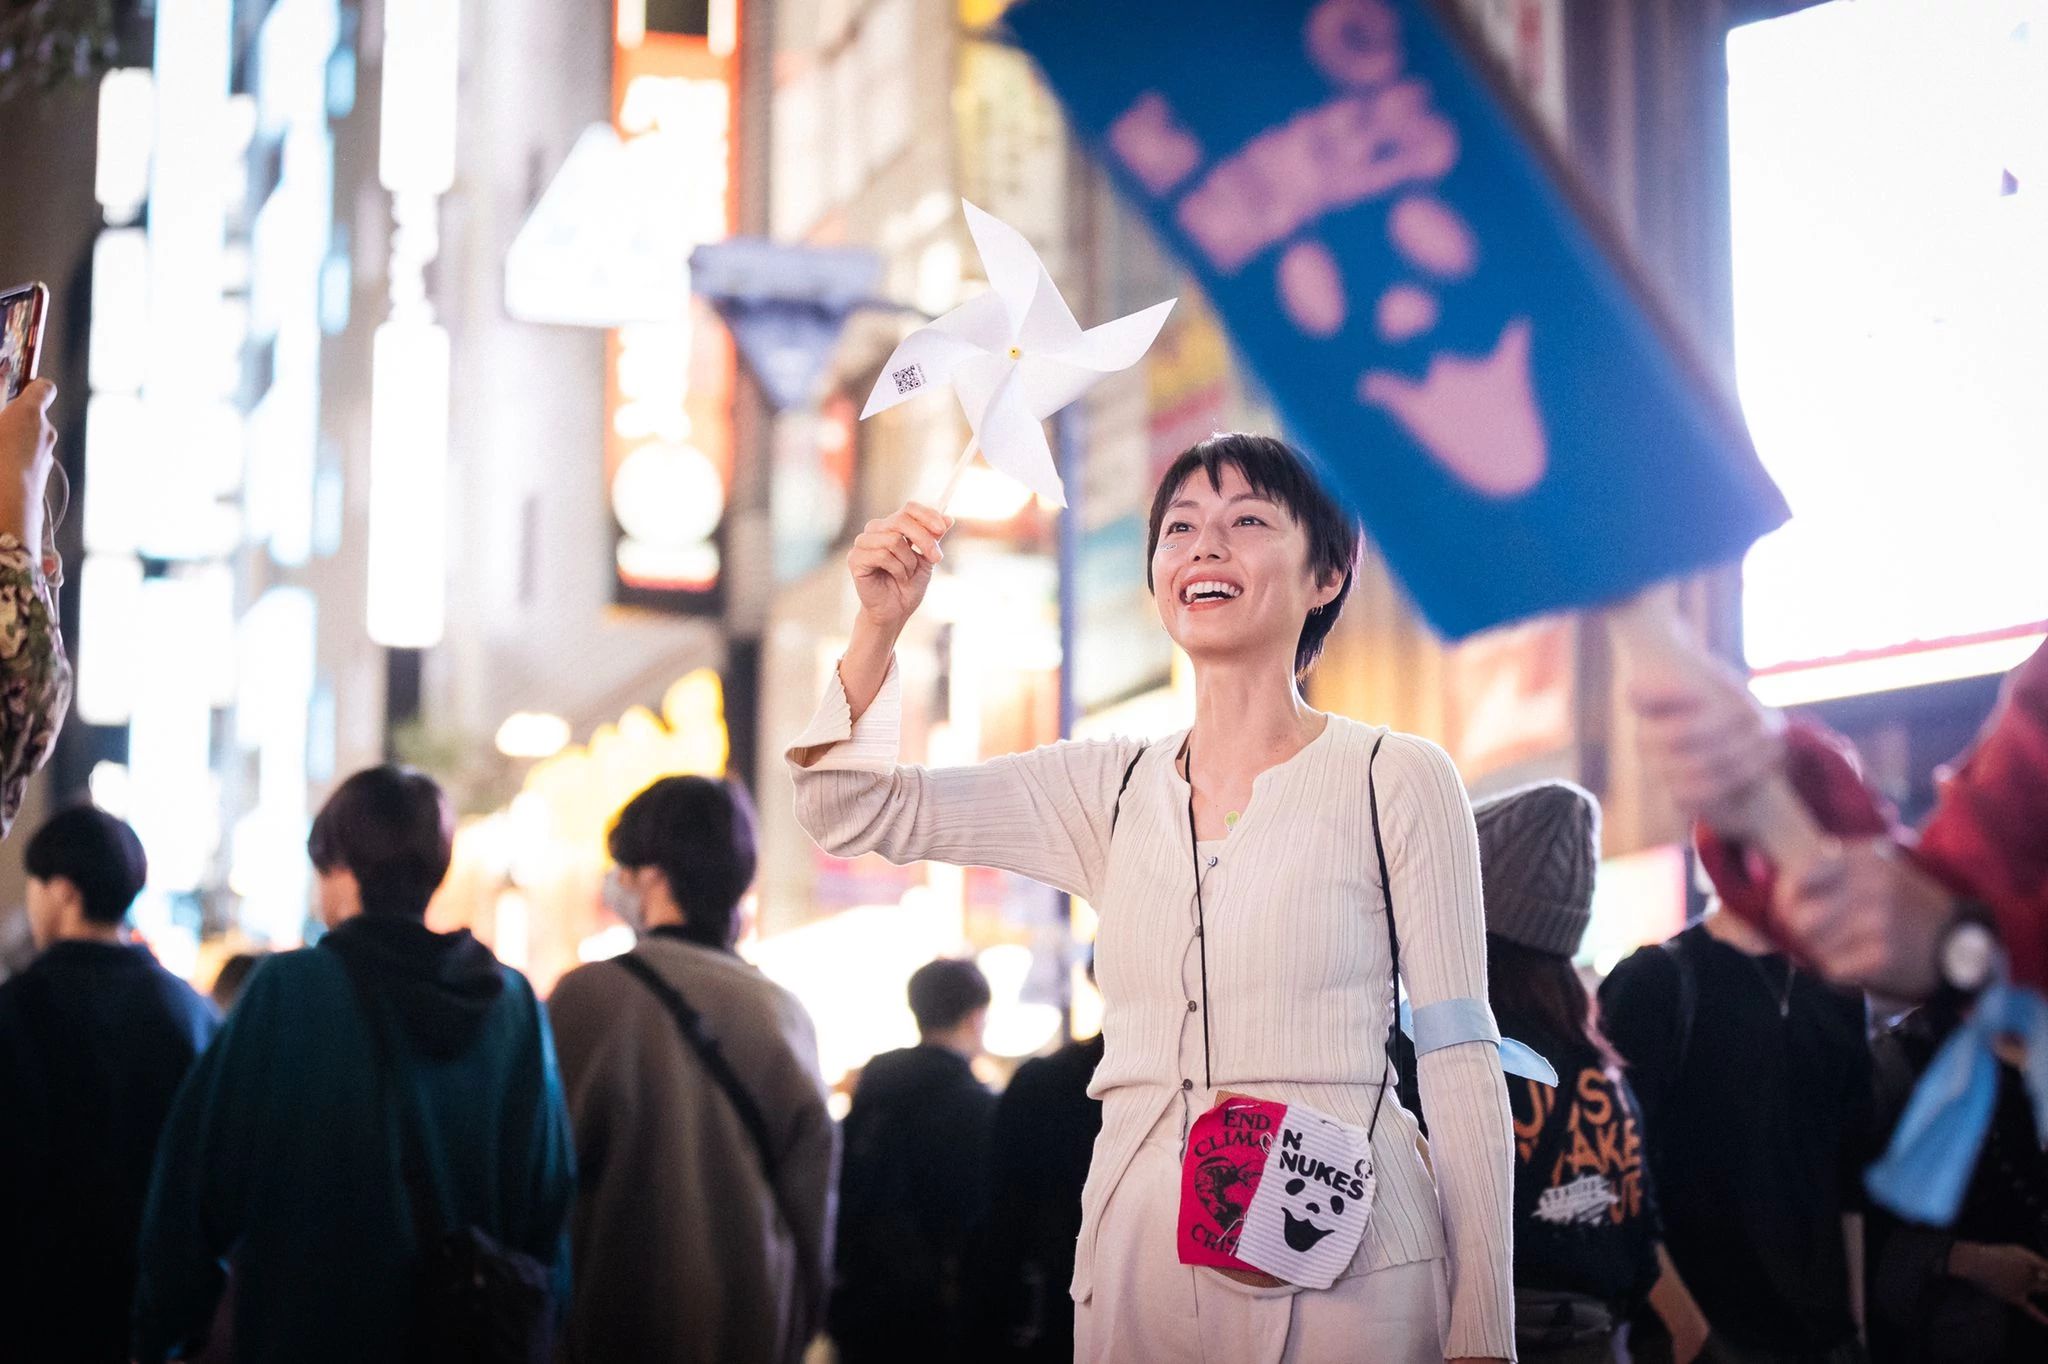 Tóquio, Japão, 3 de novembro: mais de 800 pessoas apaixonadas se reuniram na estação de Shinjuku, unindo suas vozes em uma poderosa canção climática que ressoou no coração da cidade. A ação foi organizada pela 350 Japão em colaboração com a We Want Our Future. Foto: Jun Yokoyama